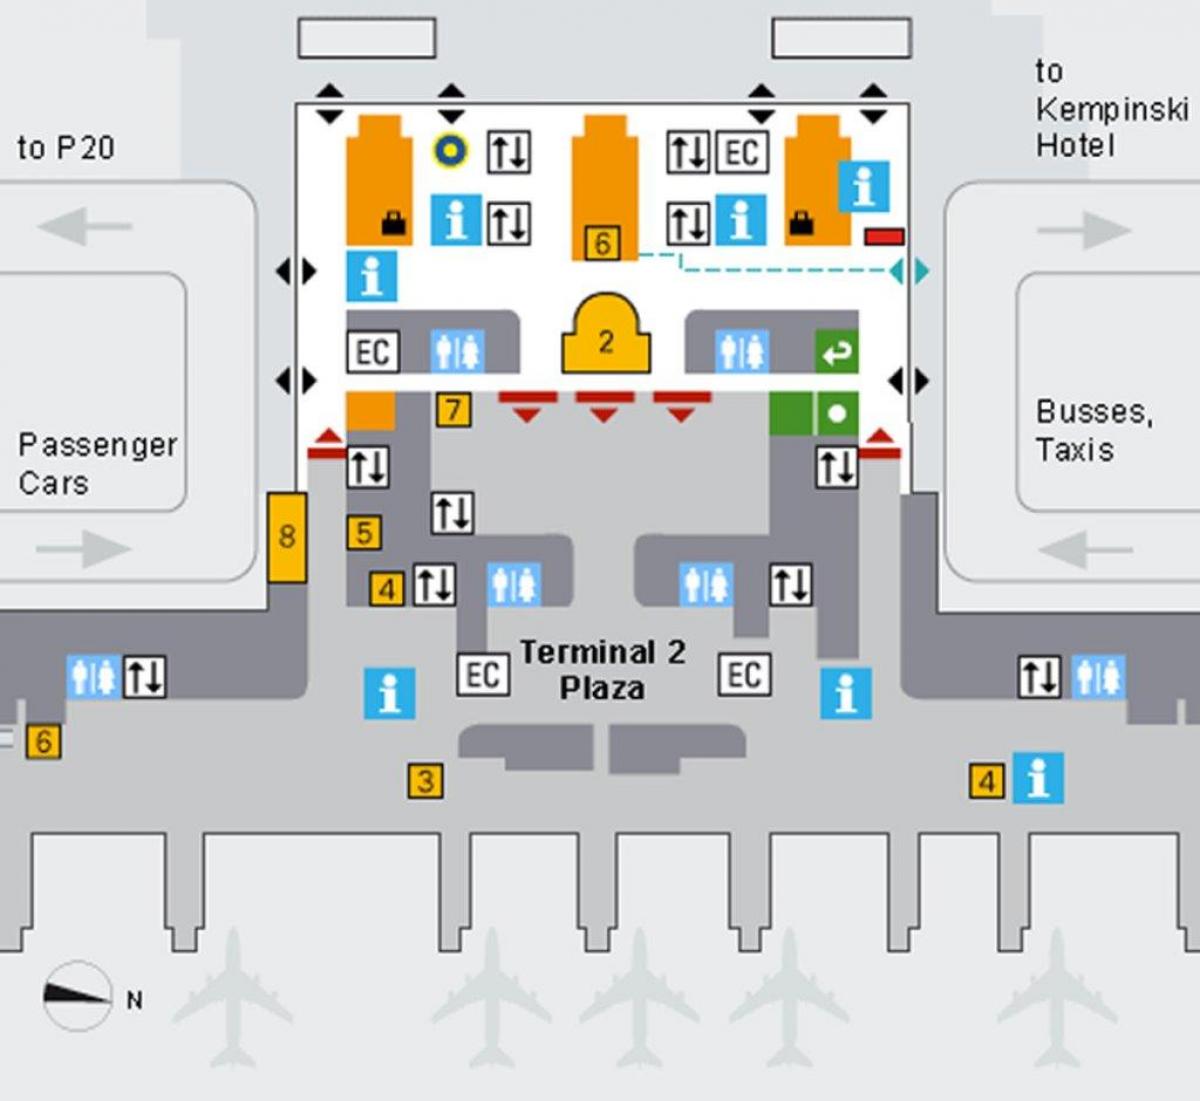 नक्शे के म्यूनिख हवाई अड्डे के आगमन